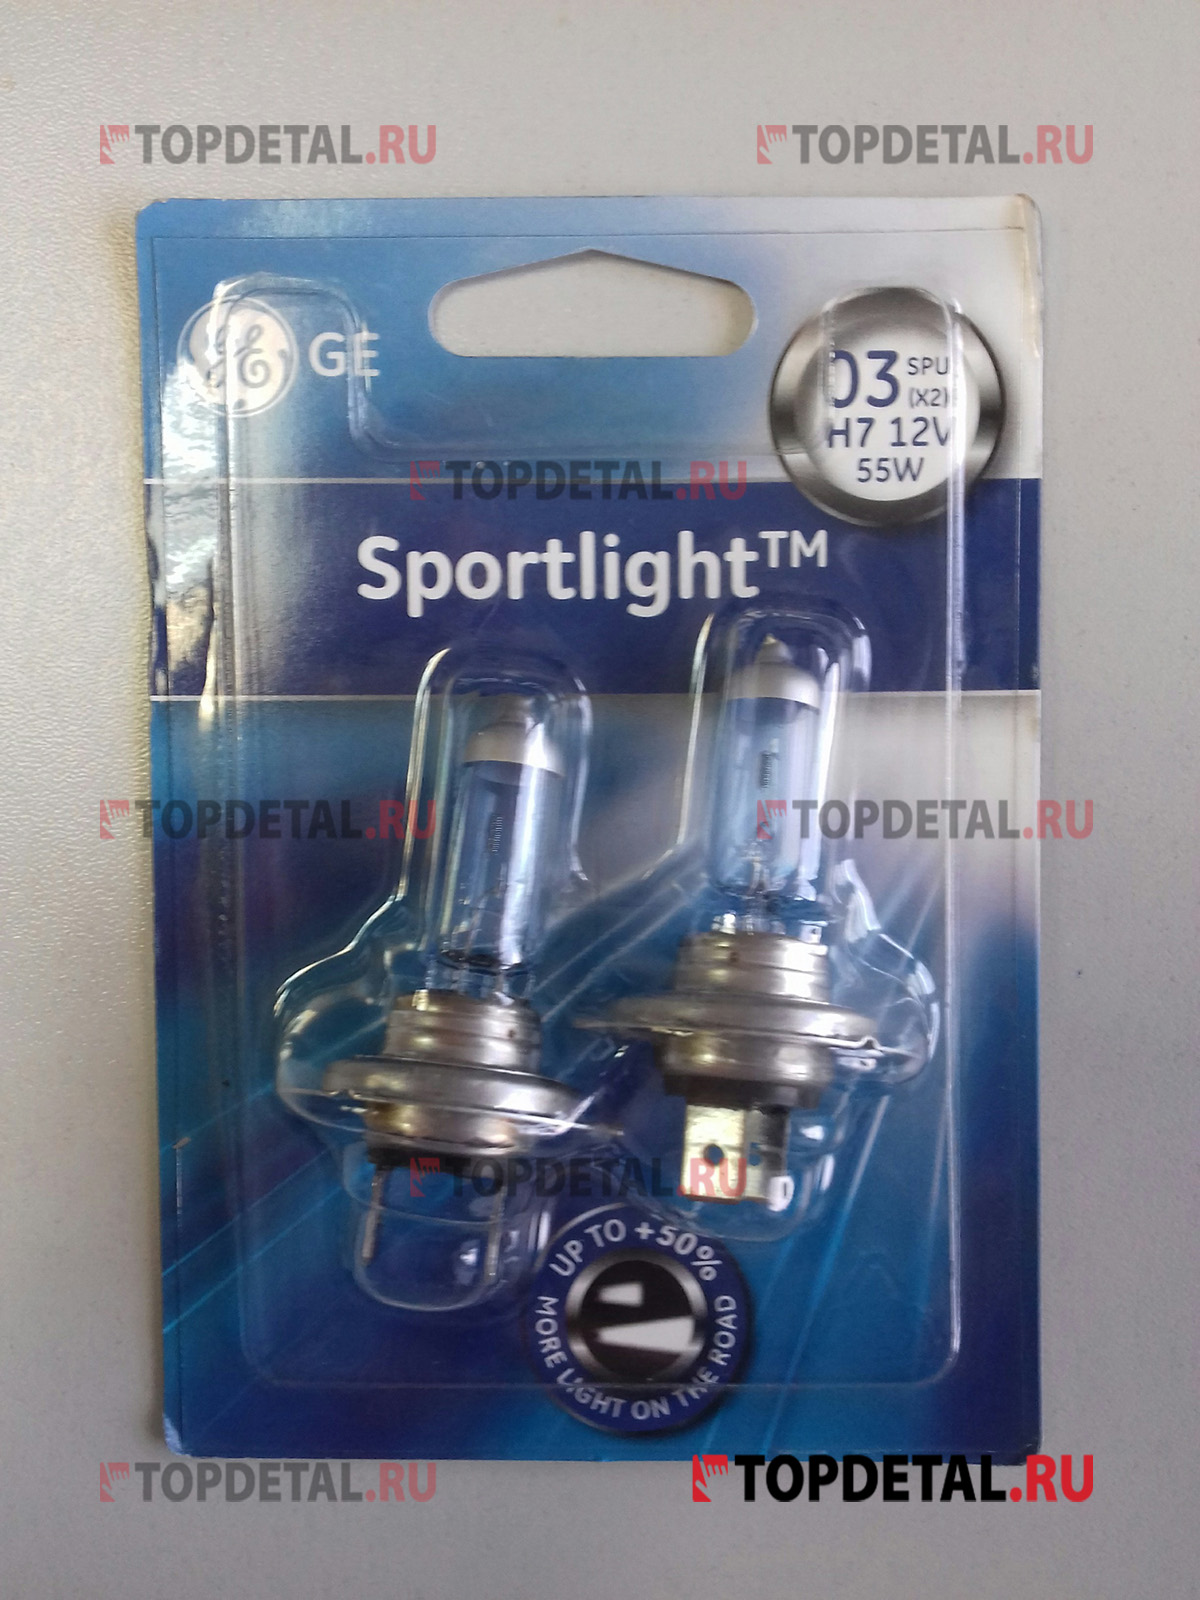 Лампа галогенная H7 12В 55 Вт РX26d General Electric Sport Light белый свет +50% блистер (2 шт.)